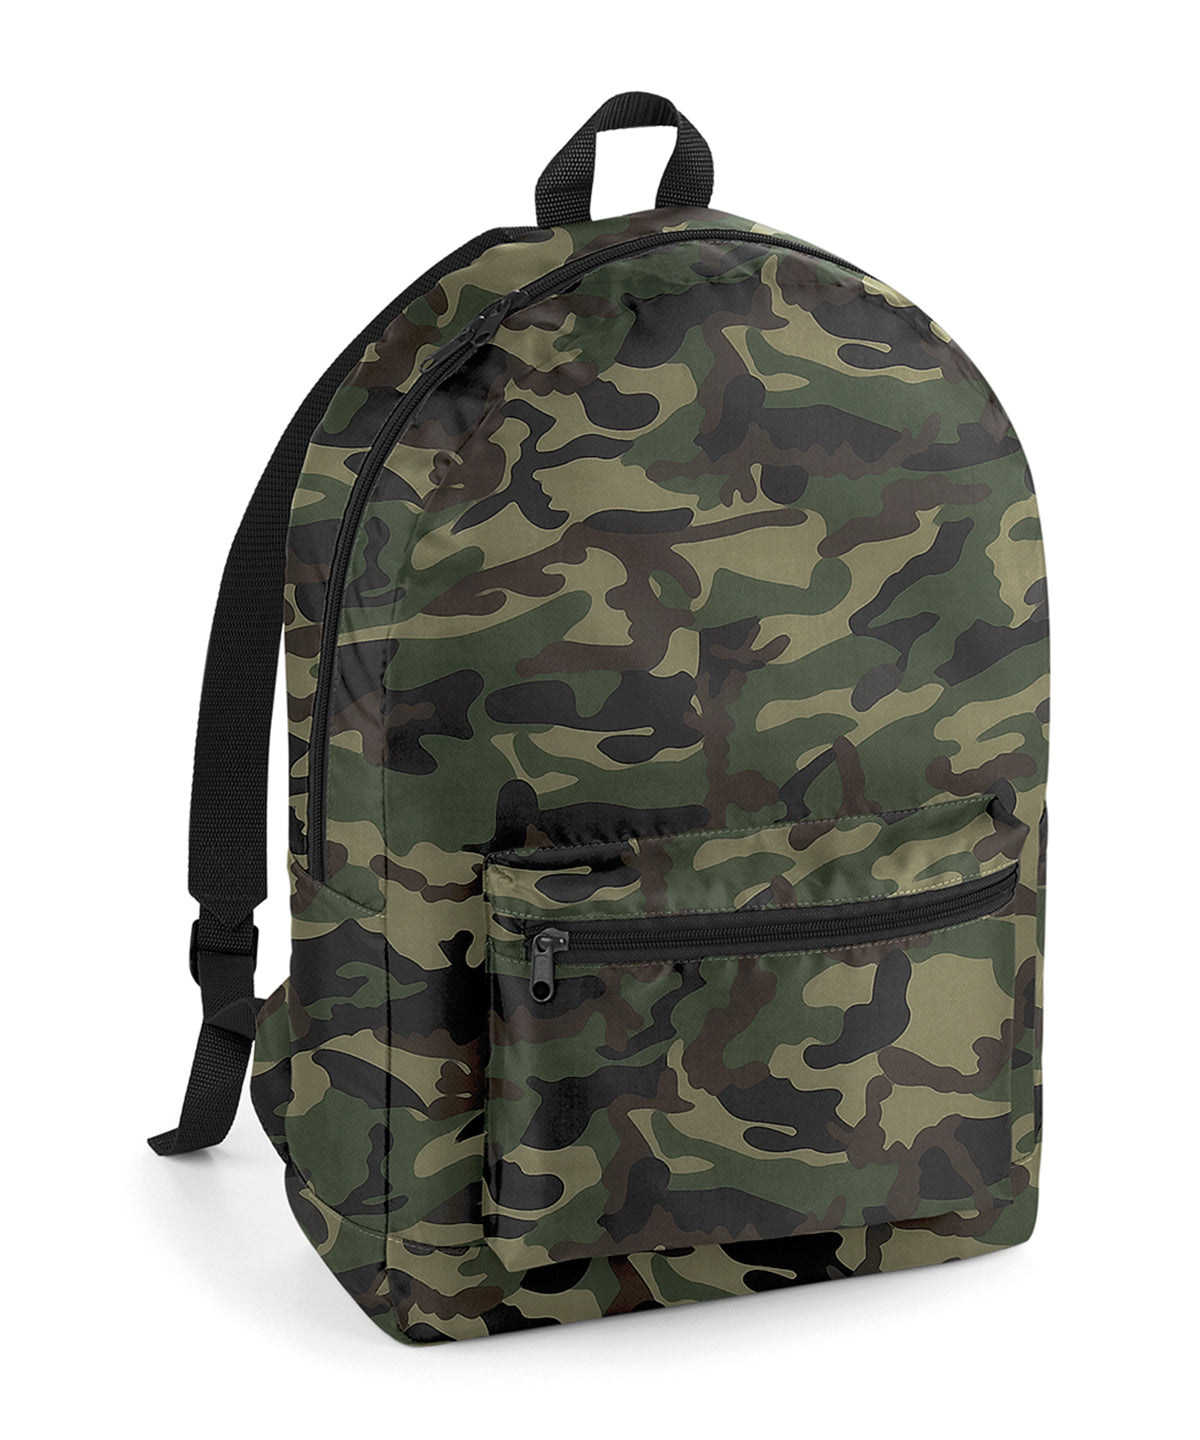 Töskur - Packaway Backpack